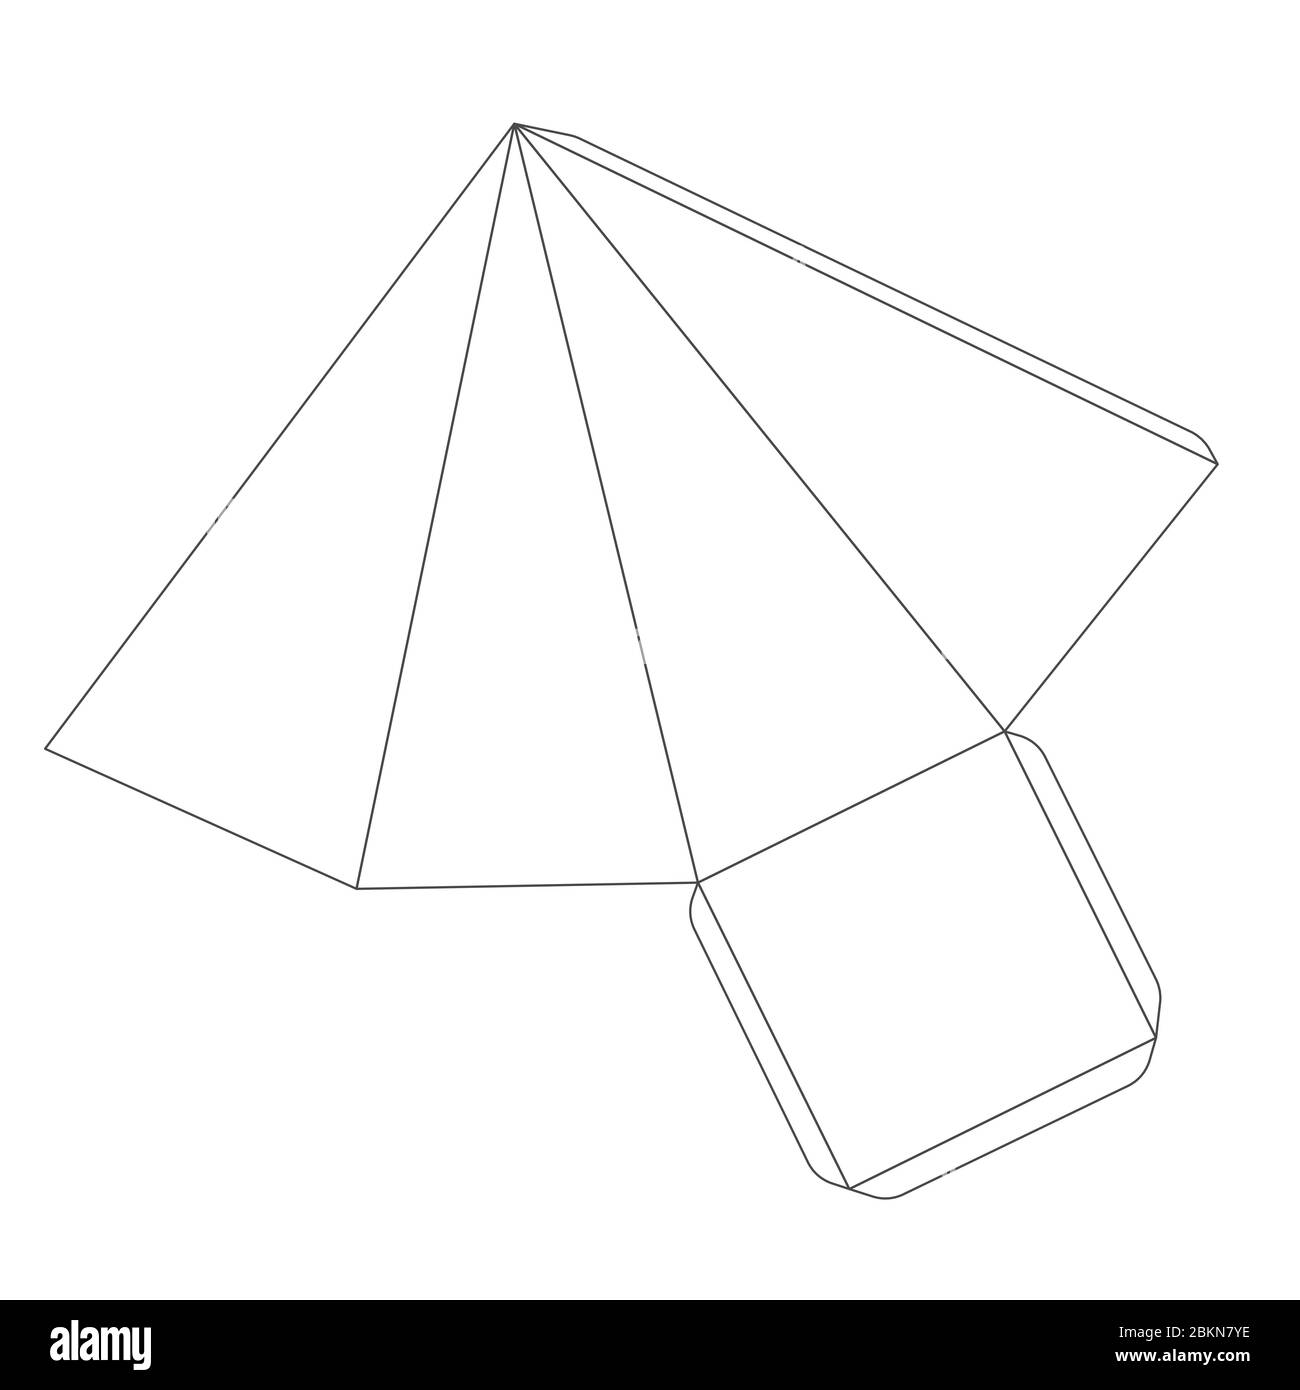 Papierpyramidenschablone mit vier Kanten, Beschnittschema auf weiß Stock Vektor